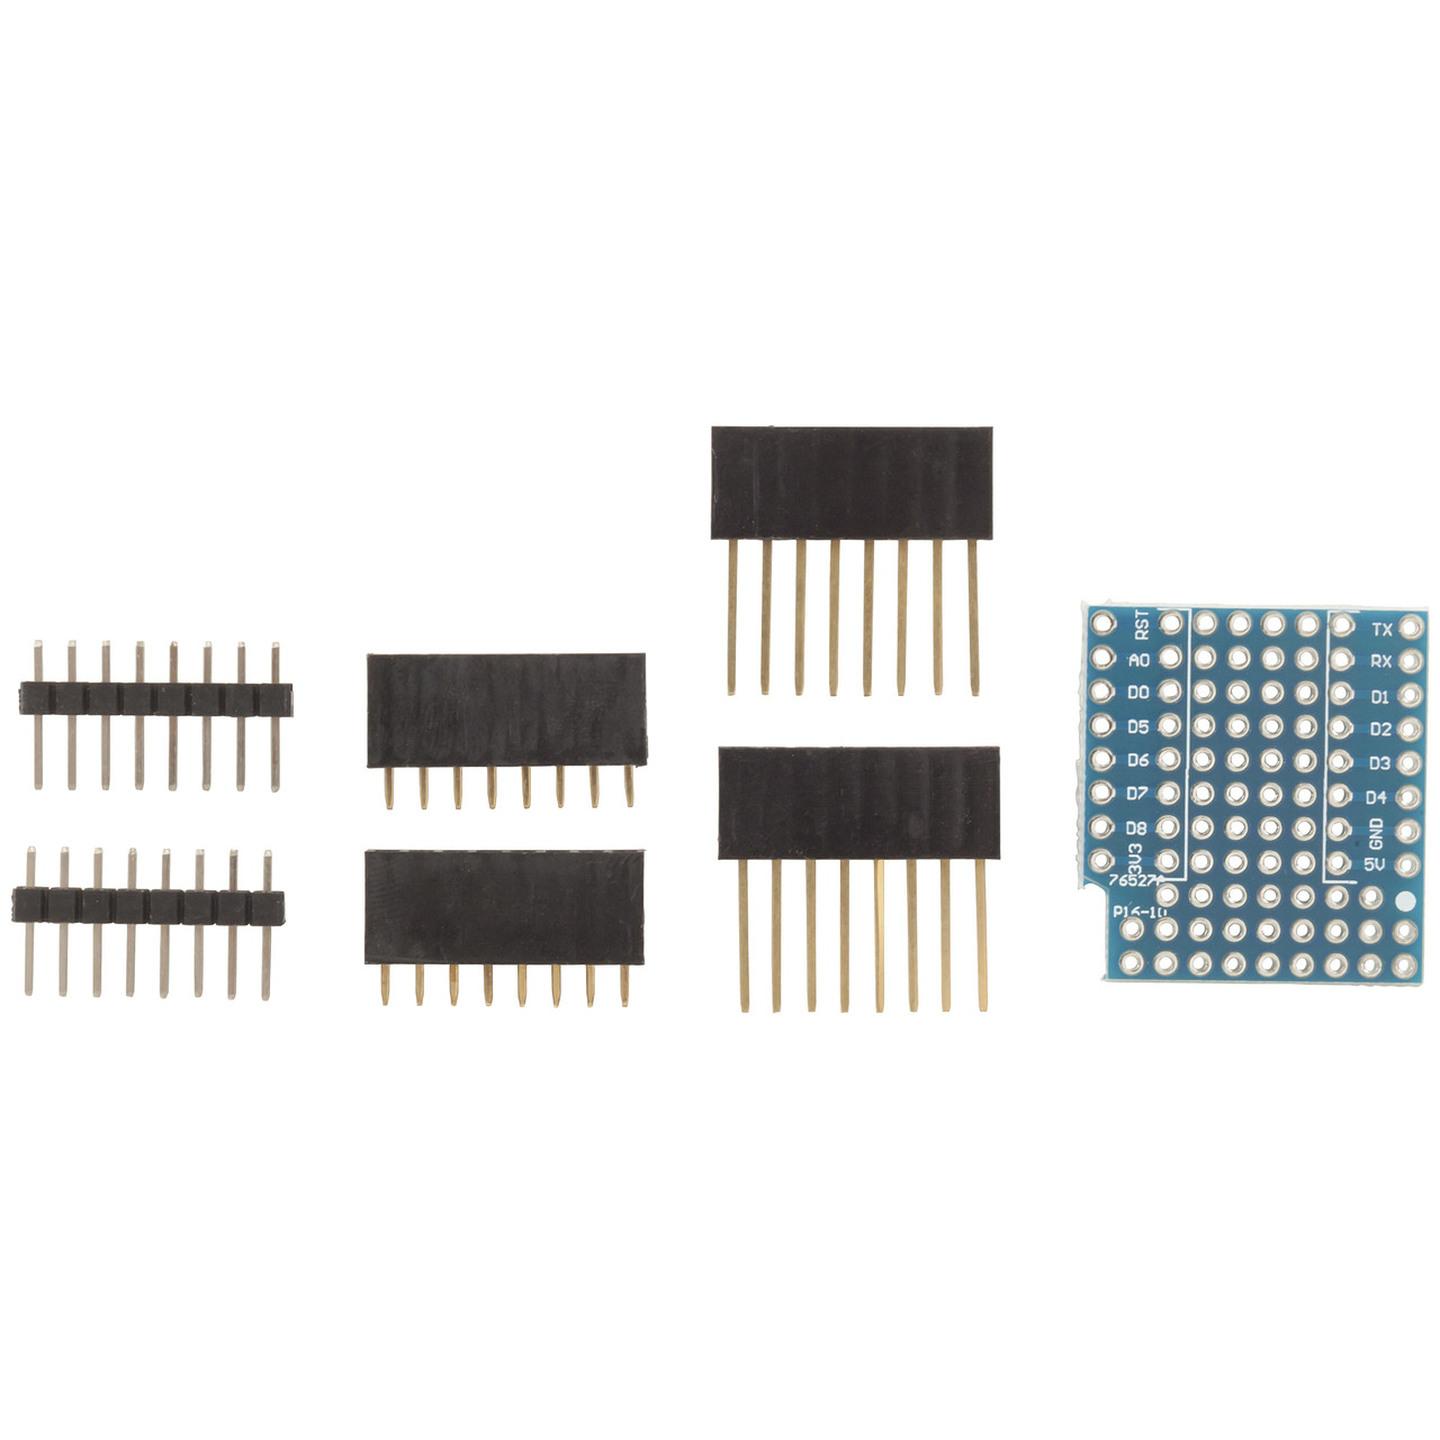 Arduino Compatible Wi-Fi Mini Prototyping Shield